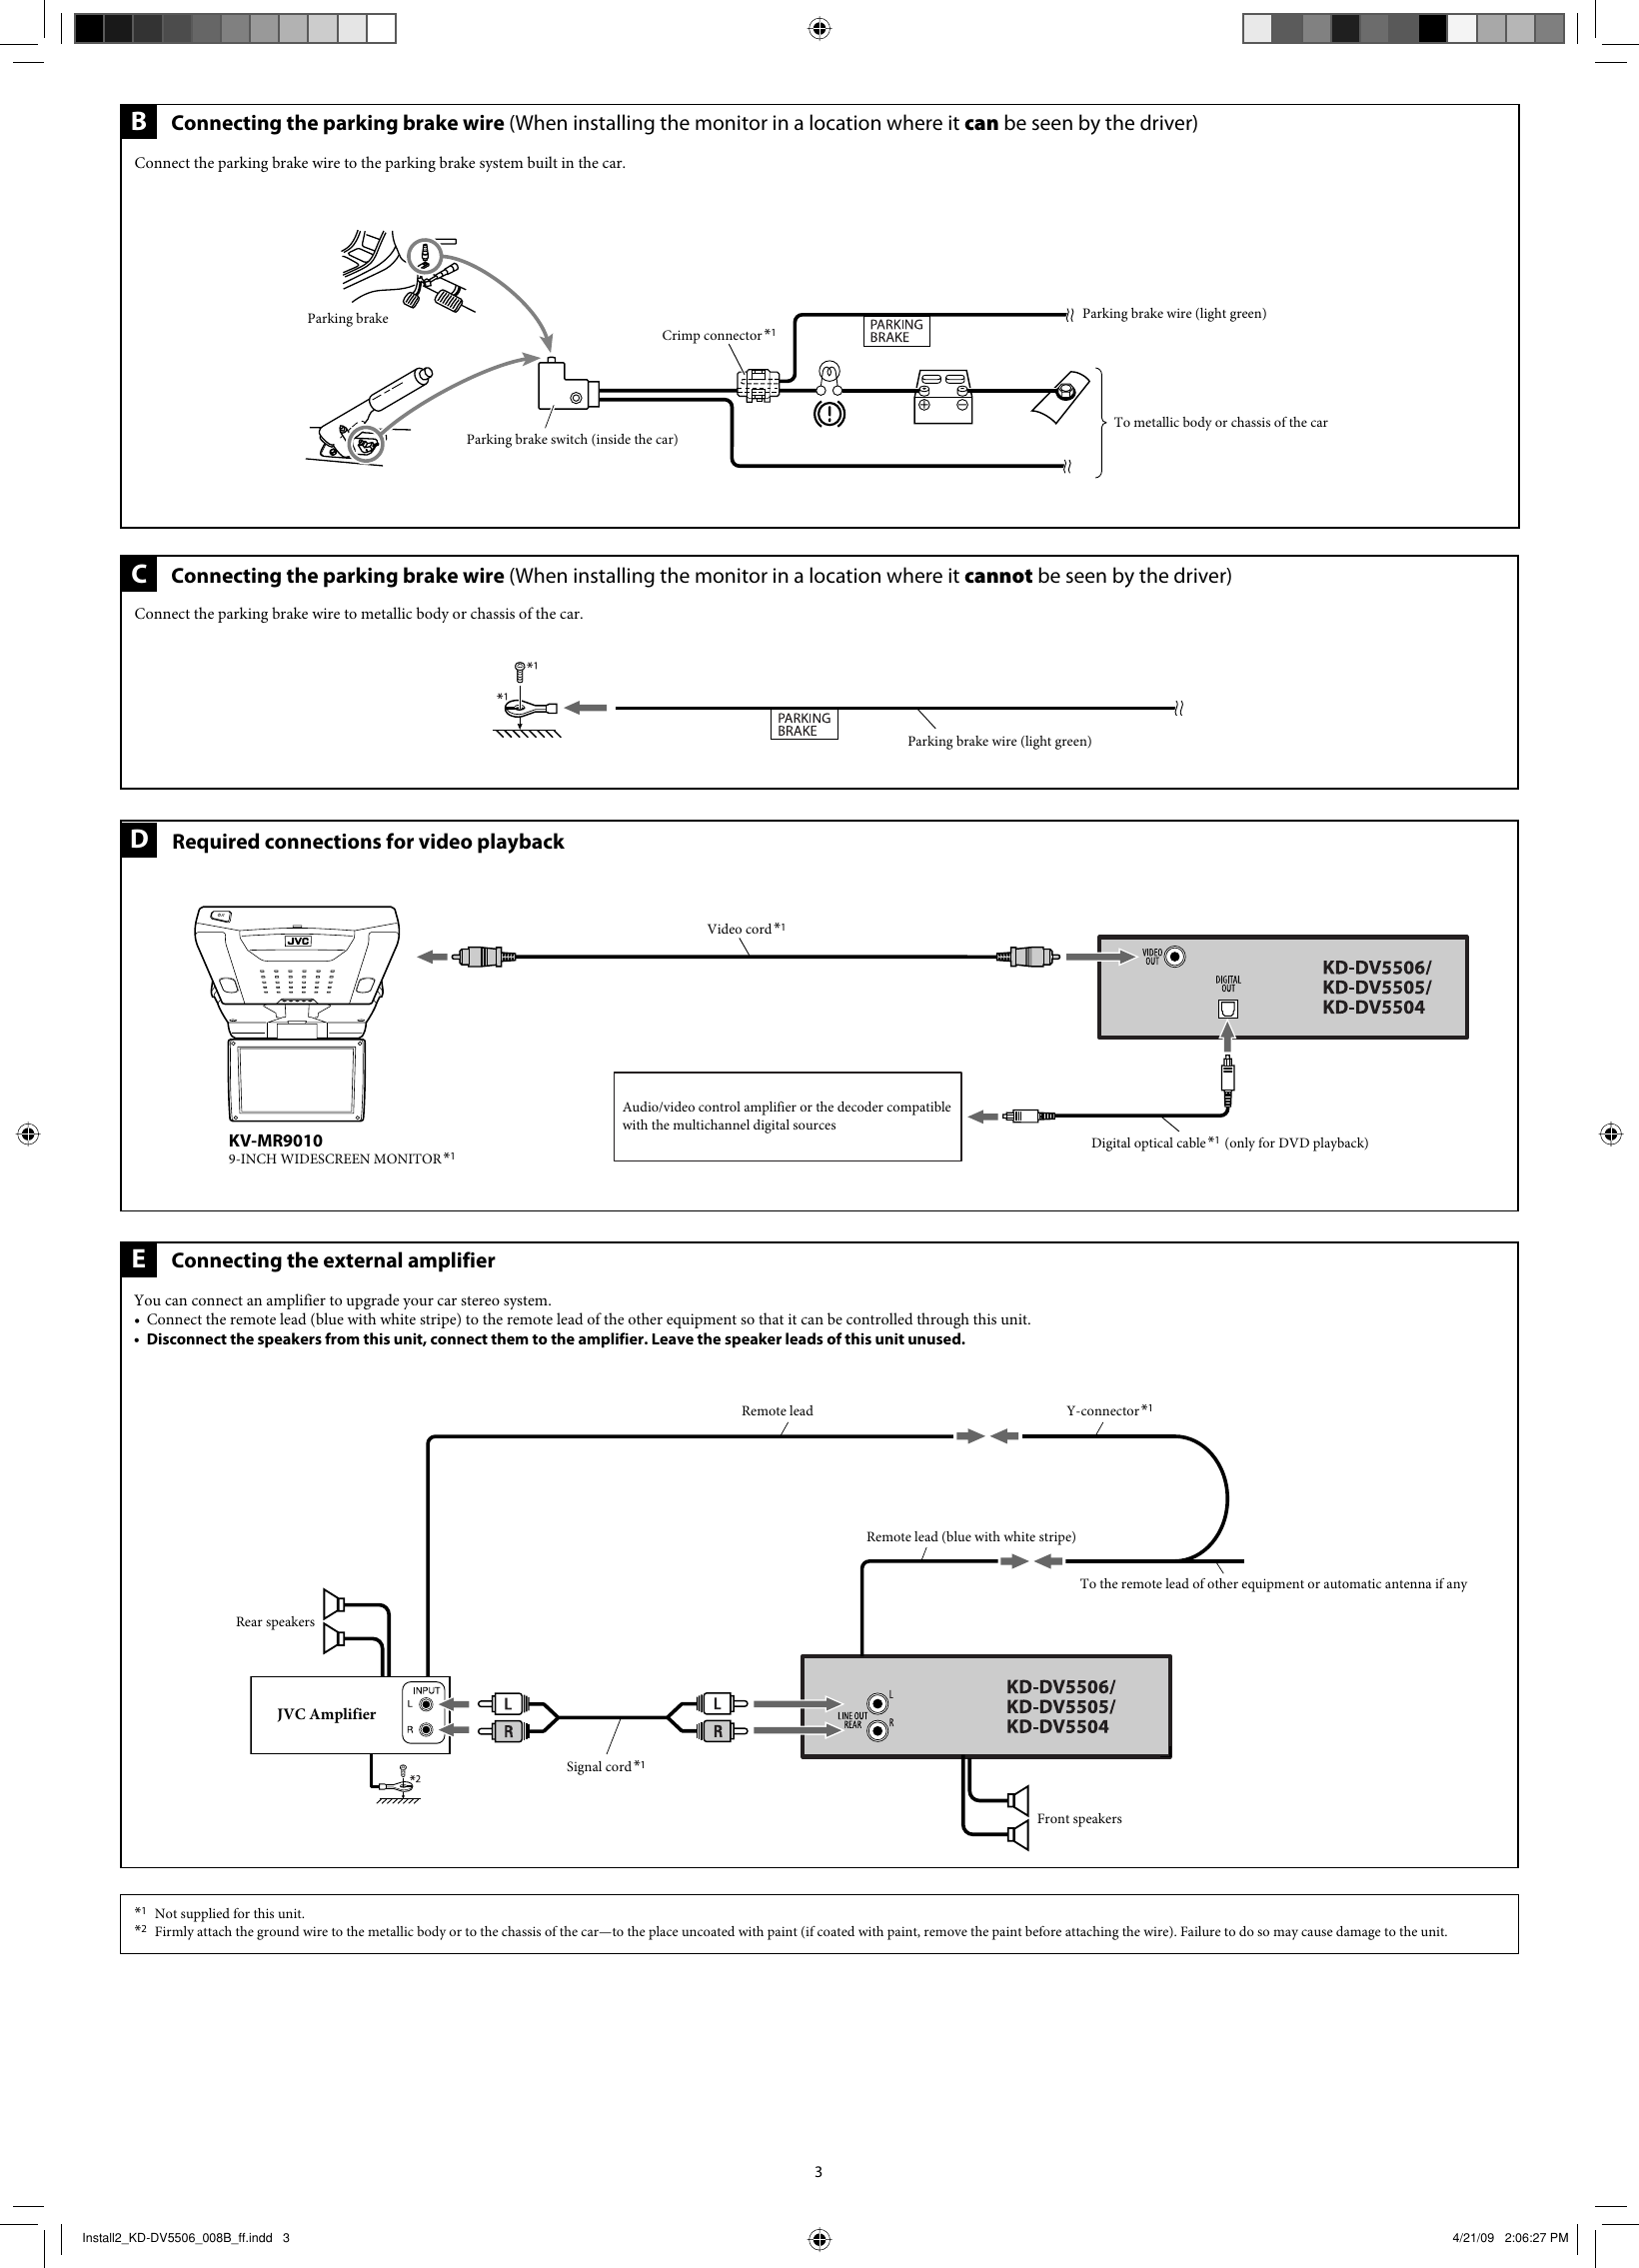 Page 3 of 4 - JVC KD-DV5504UI Install1_KD-DV5506_008A_f User Manual GET0606-008B